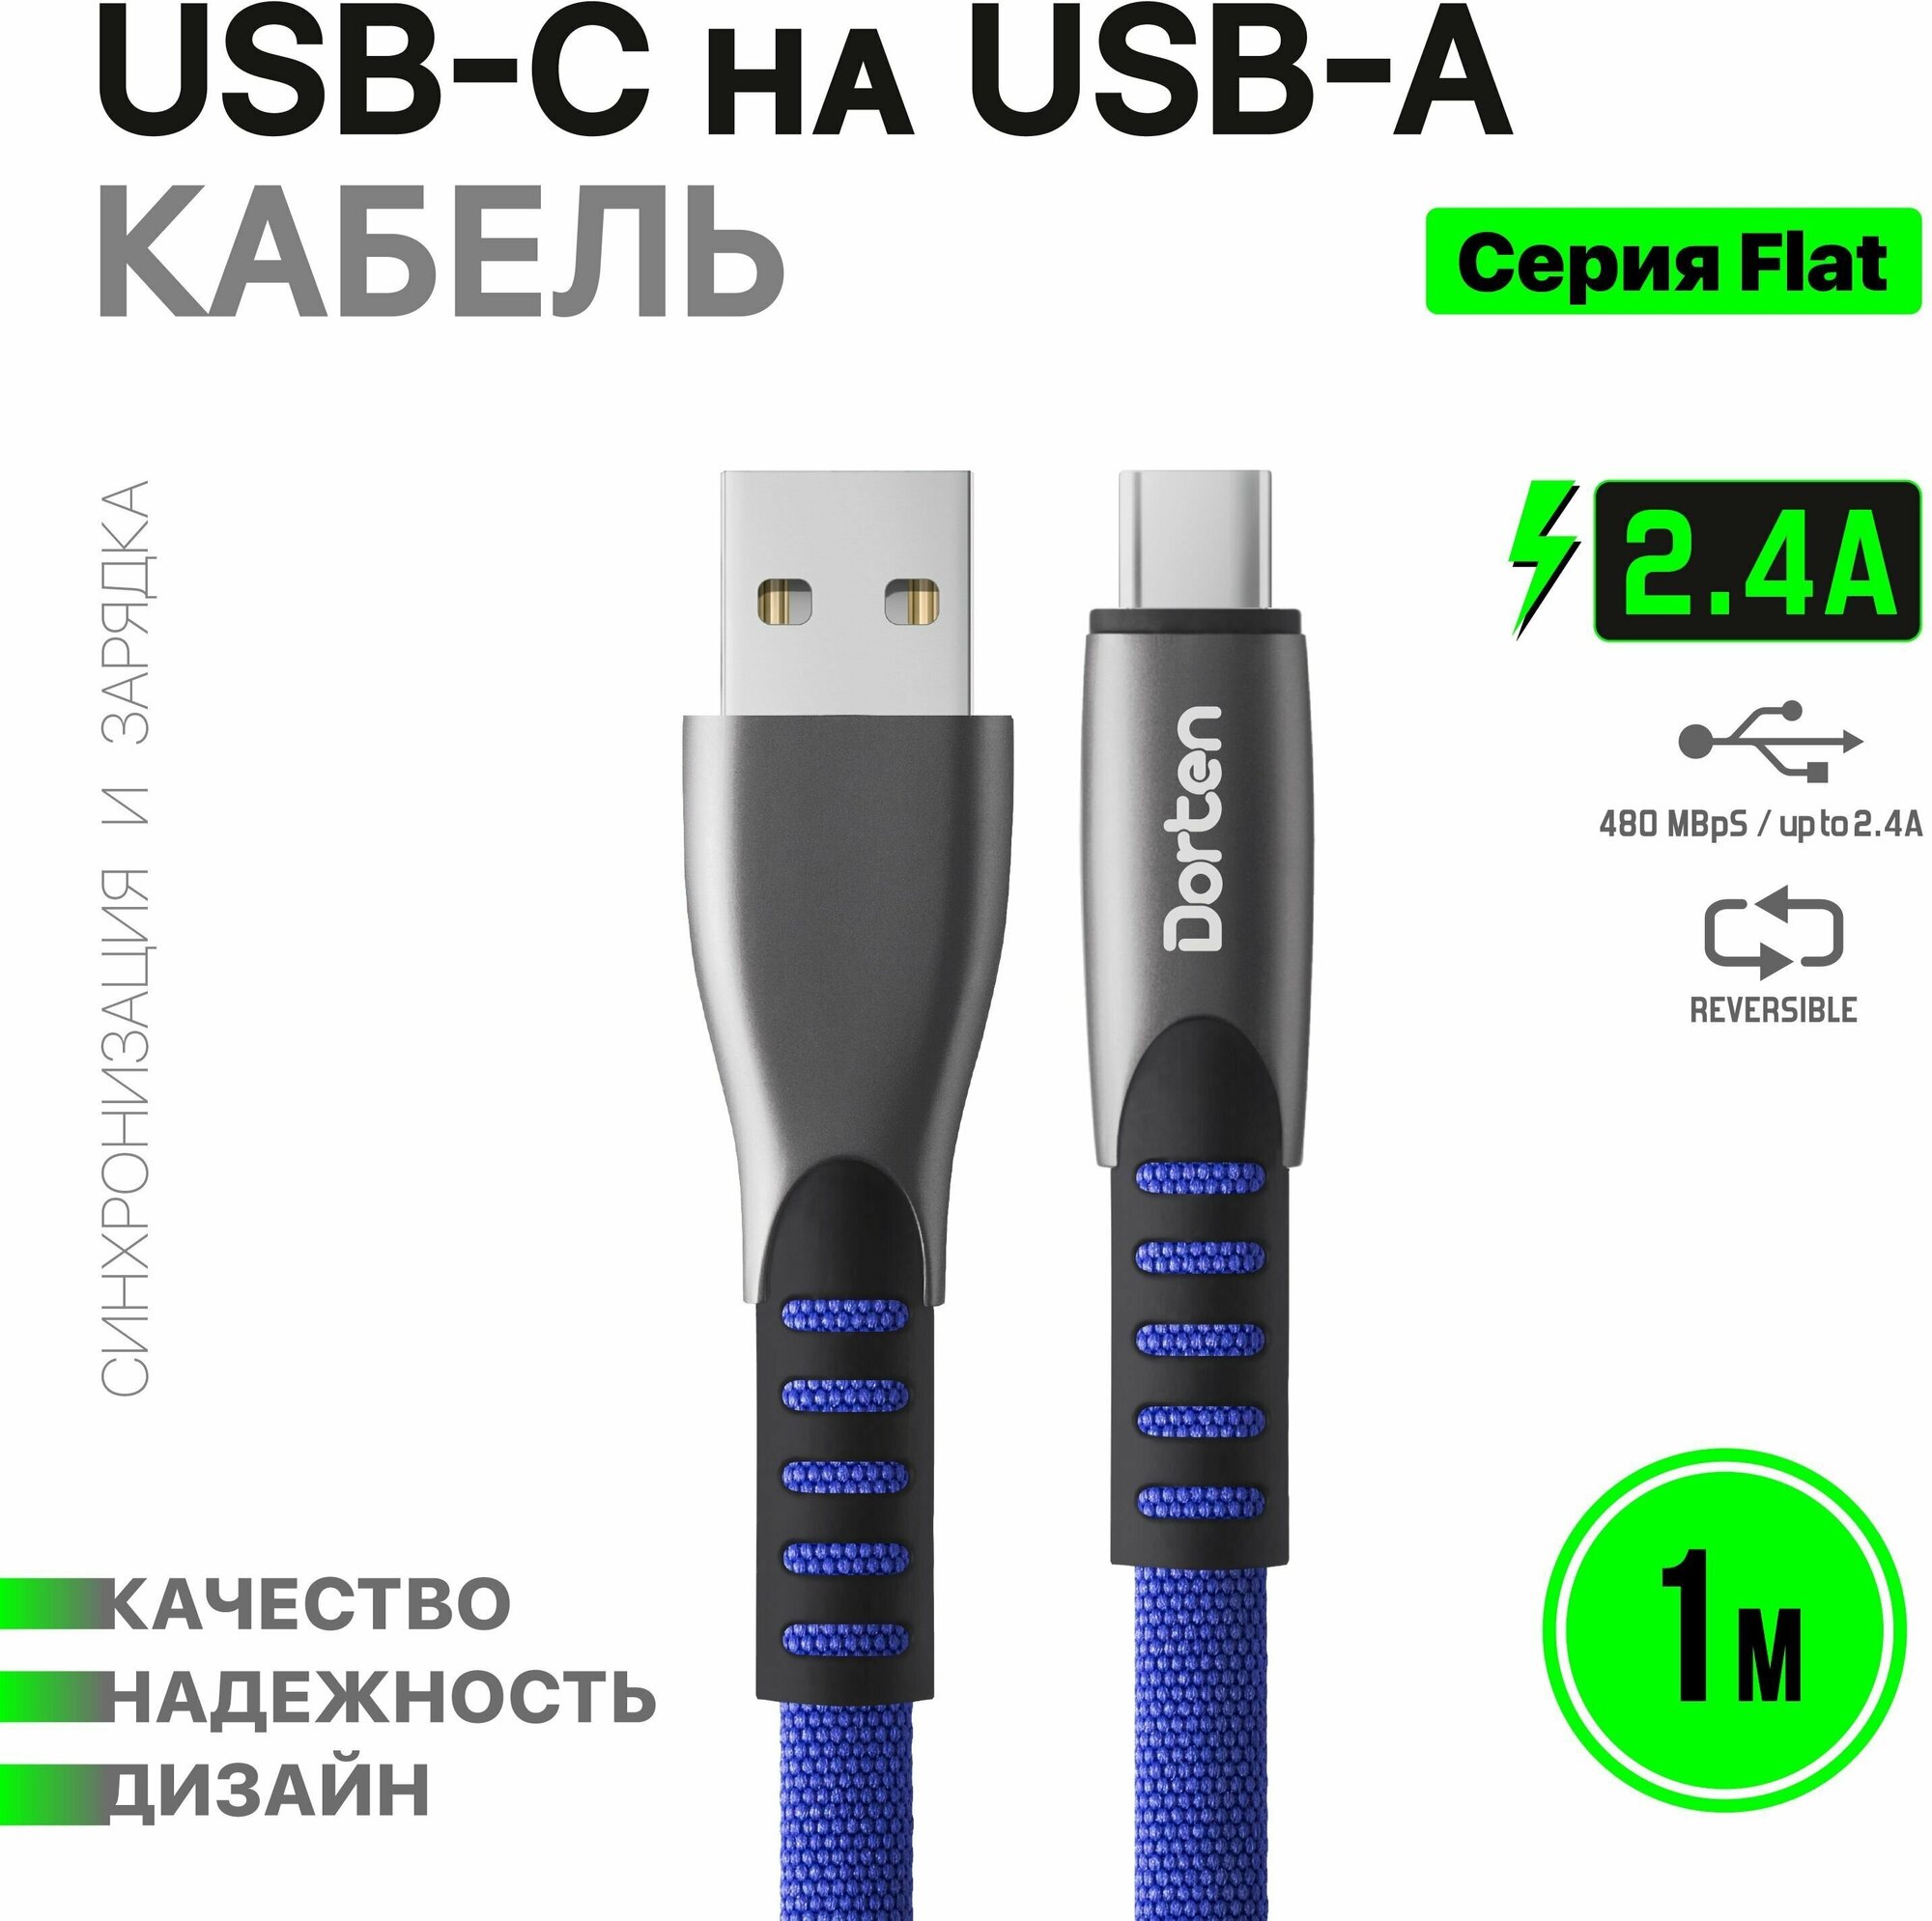 Кабель USB-C для зарядки телефона 1 метр: Flat series провод юсб 1м - Синий